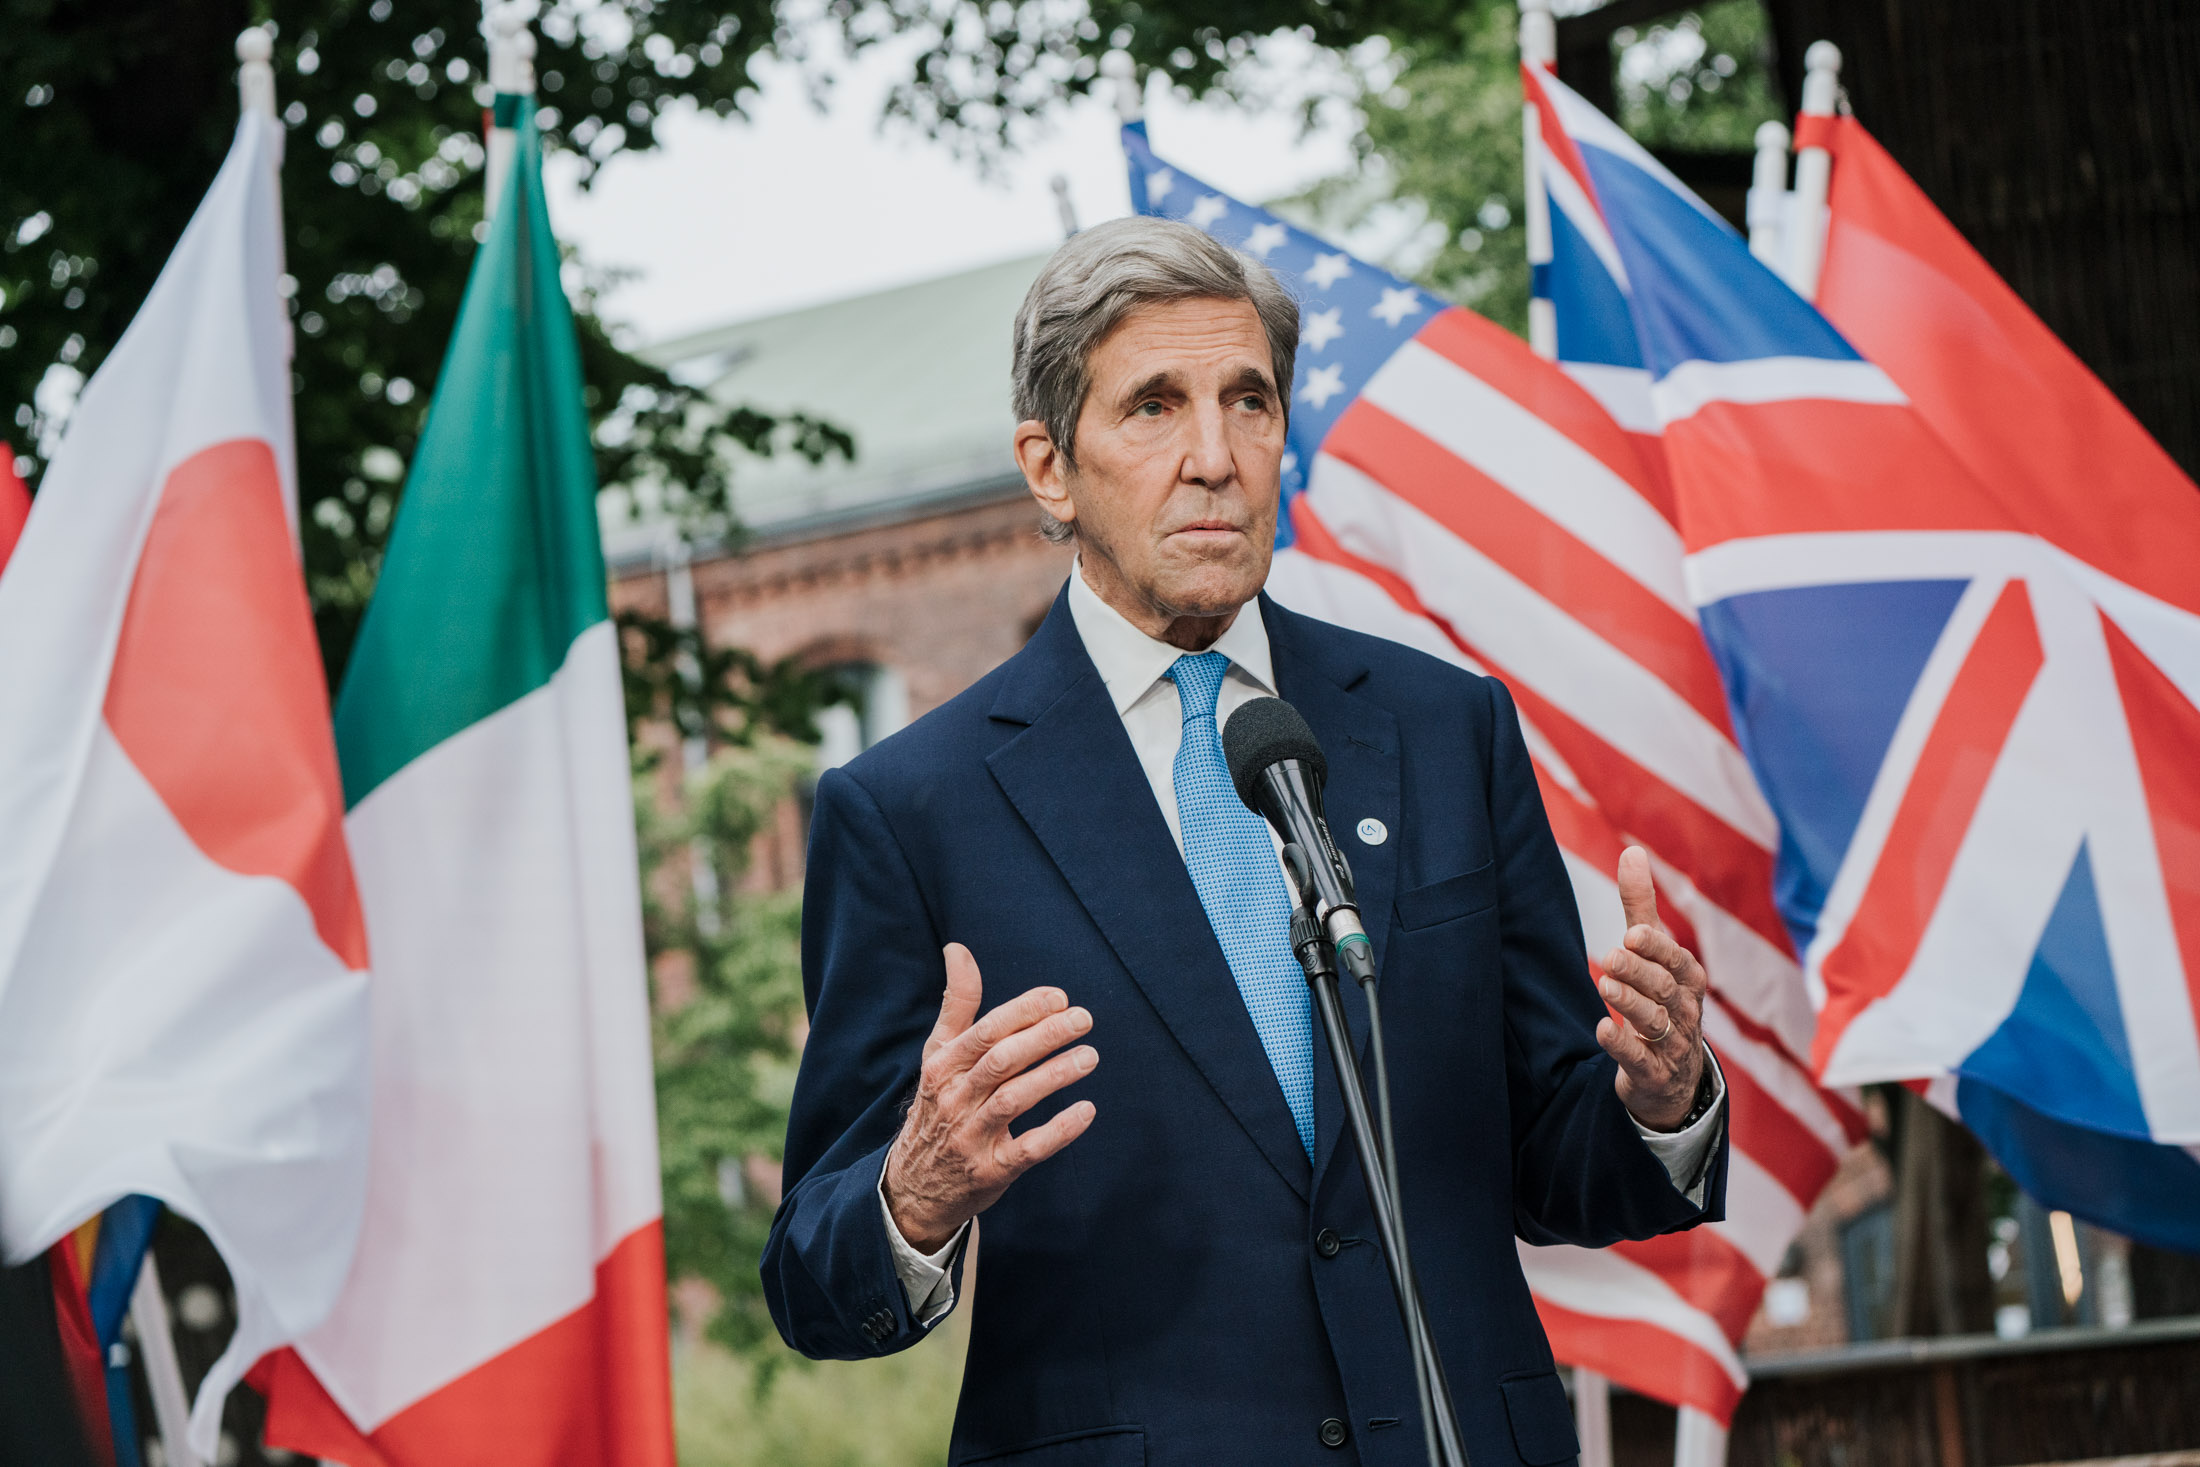 Eventfotograf Berlin lichtet John Kerry steht vor einer amerikanischen Flagge